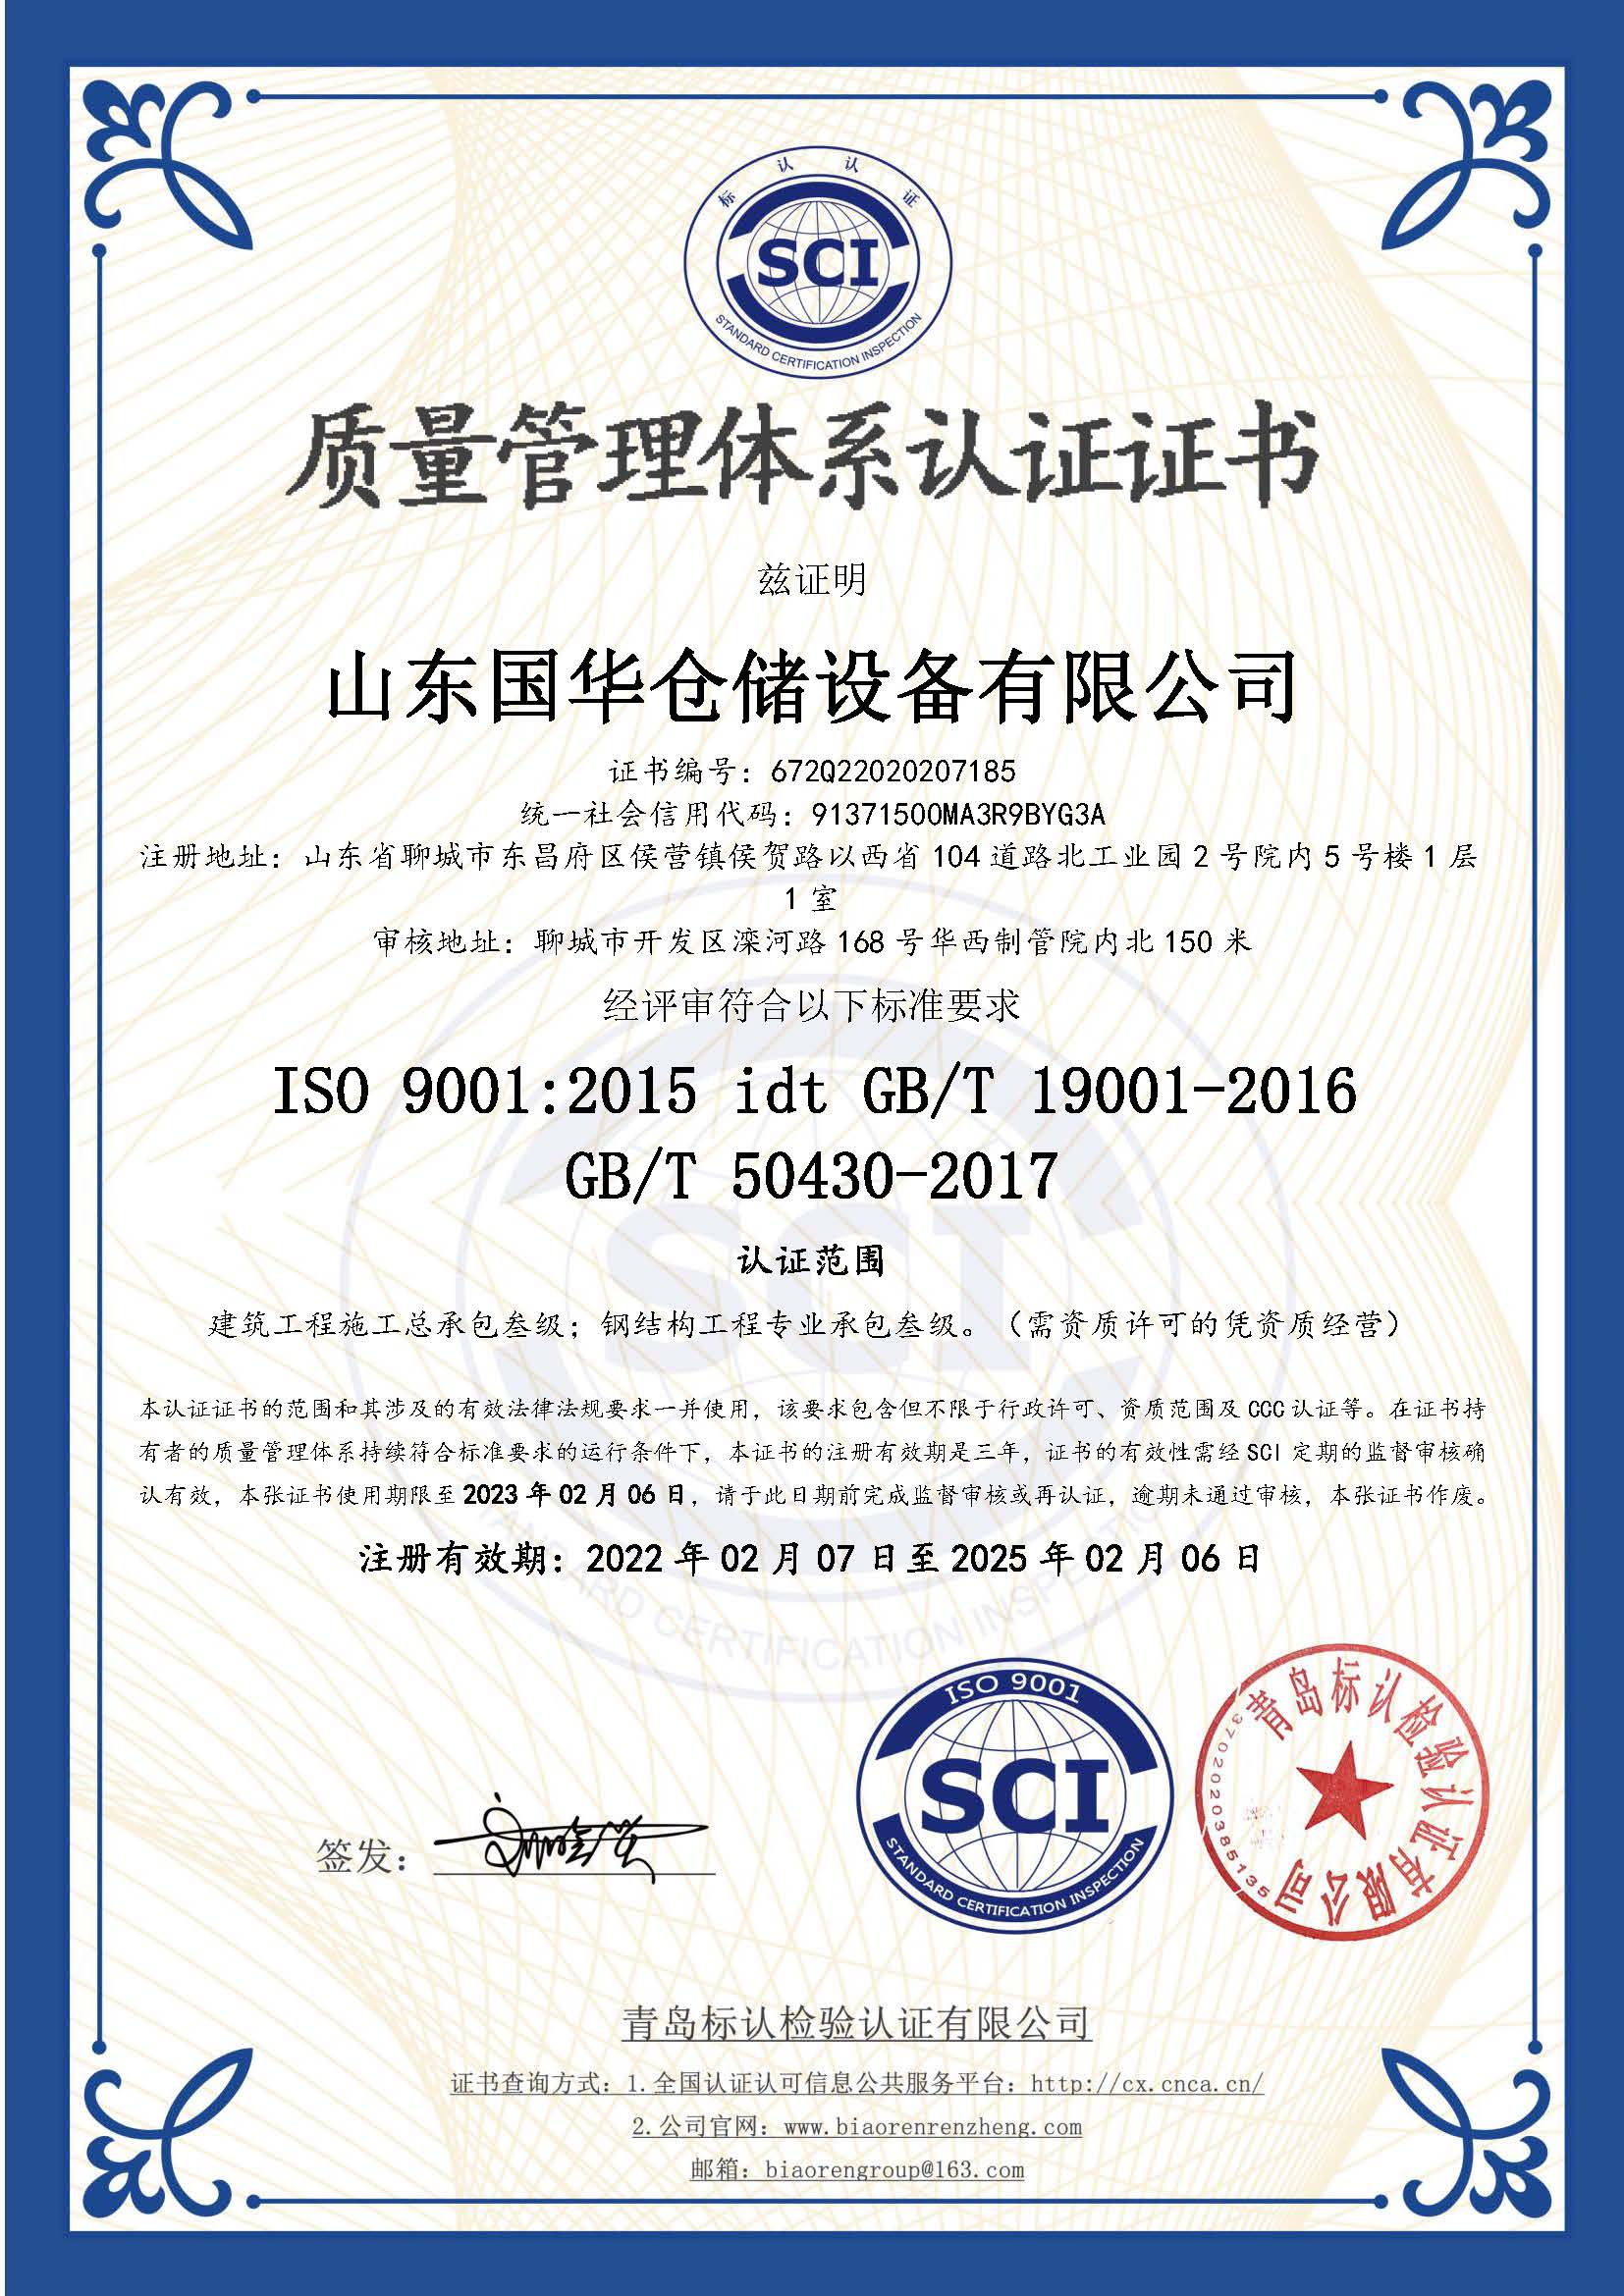 葫芦岛钢板仓ISO质量体系认证证书